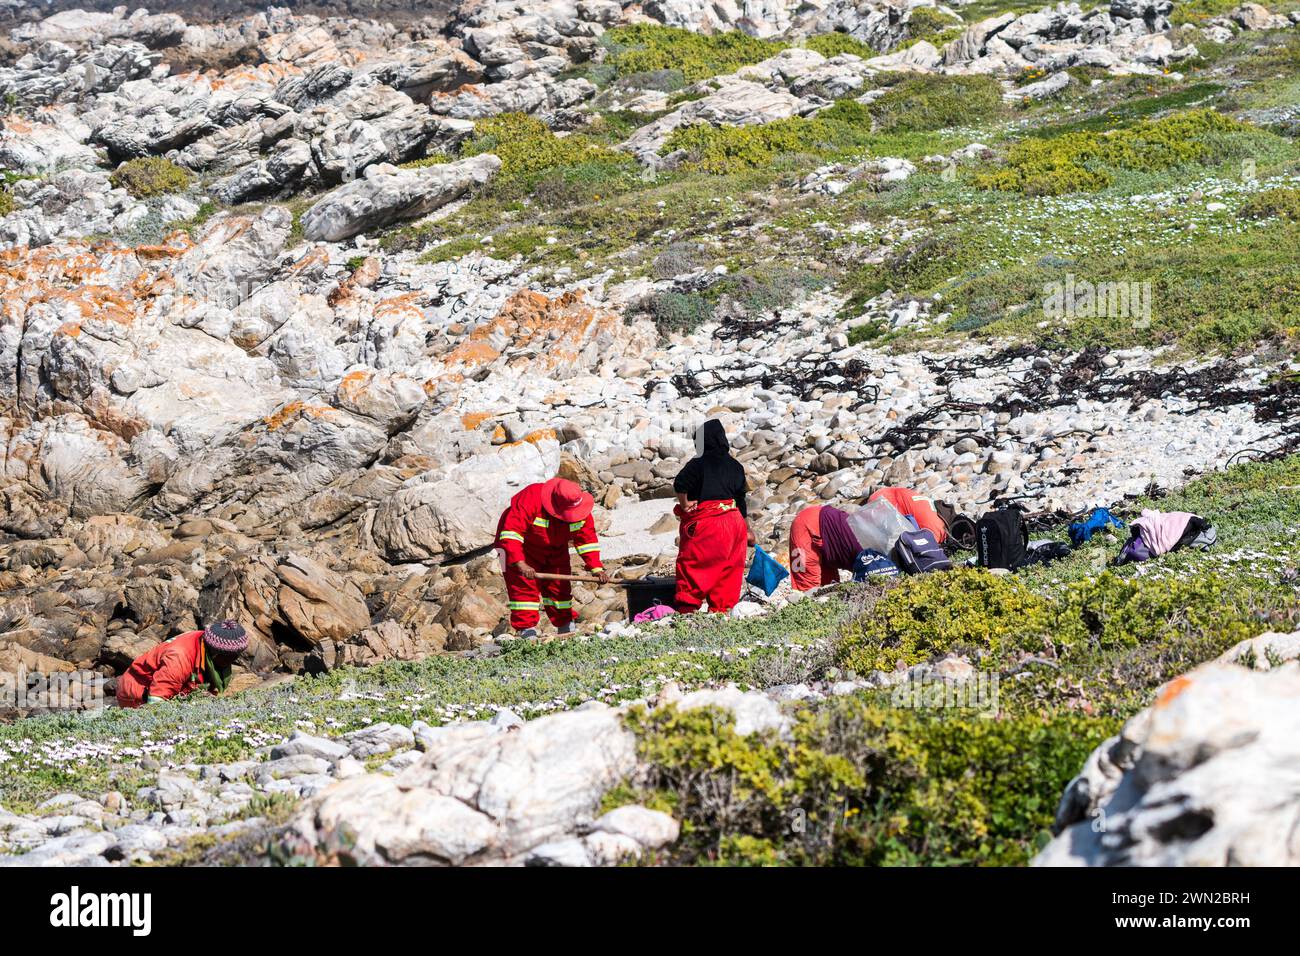 Kommunale Arbeiter in Overalls reinigen einen Strand im Westkap, Südafrika Konzept Umweltschutz der Natur Stockfoto